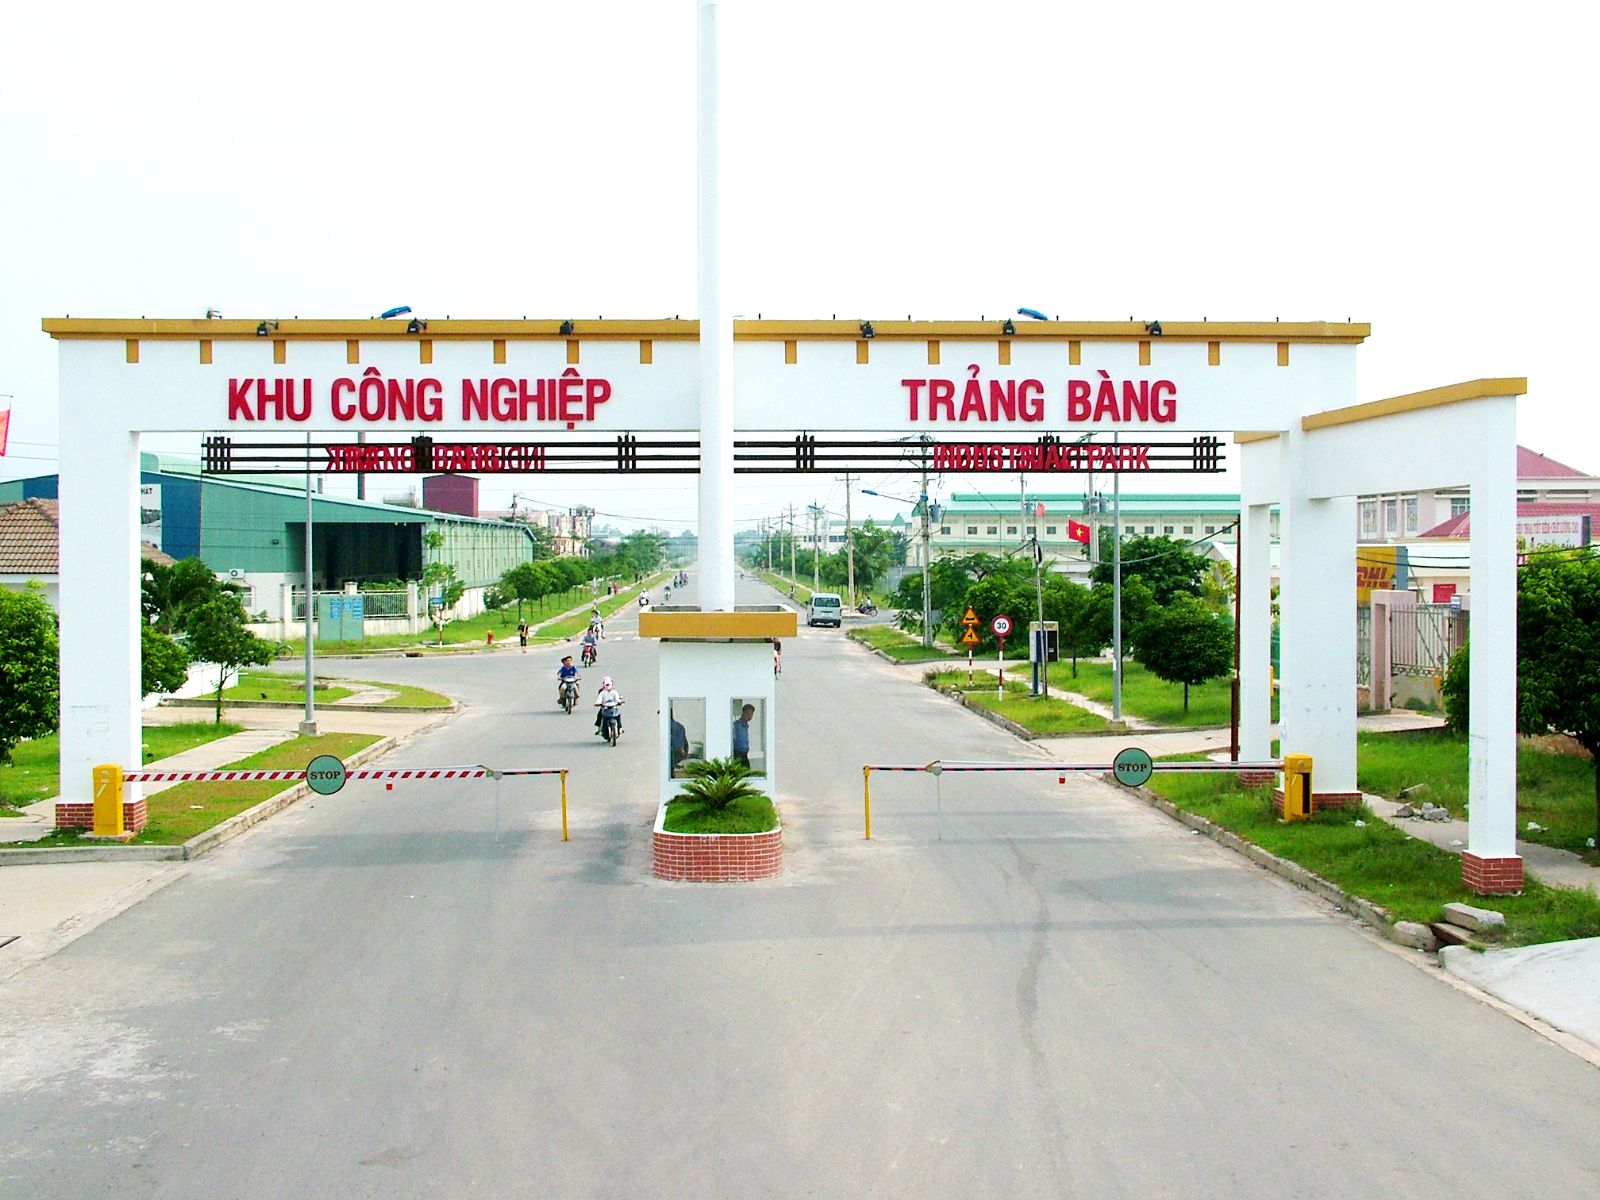 Trang Bang Industrial Park